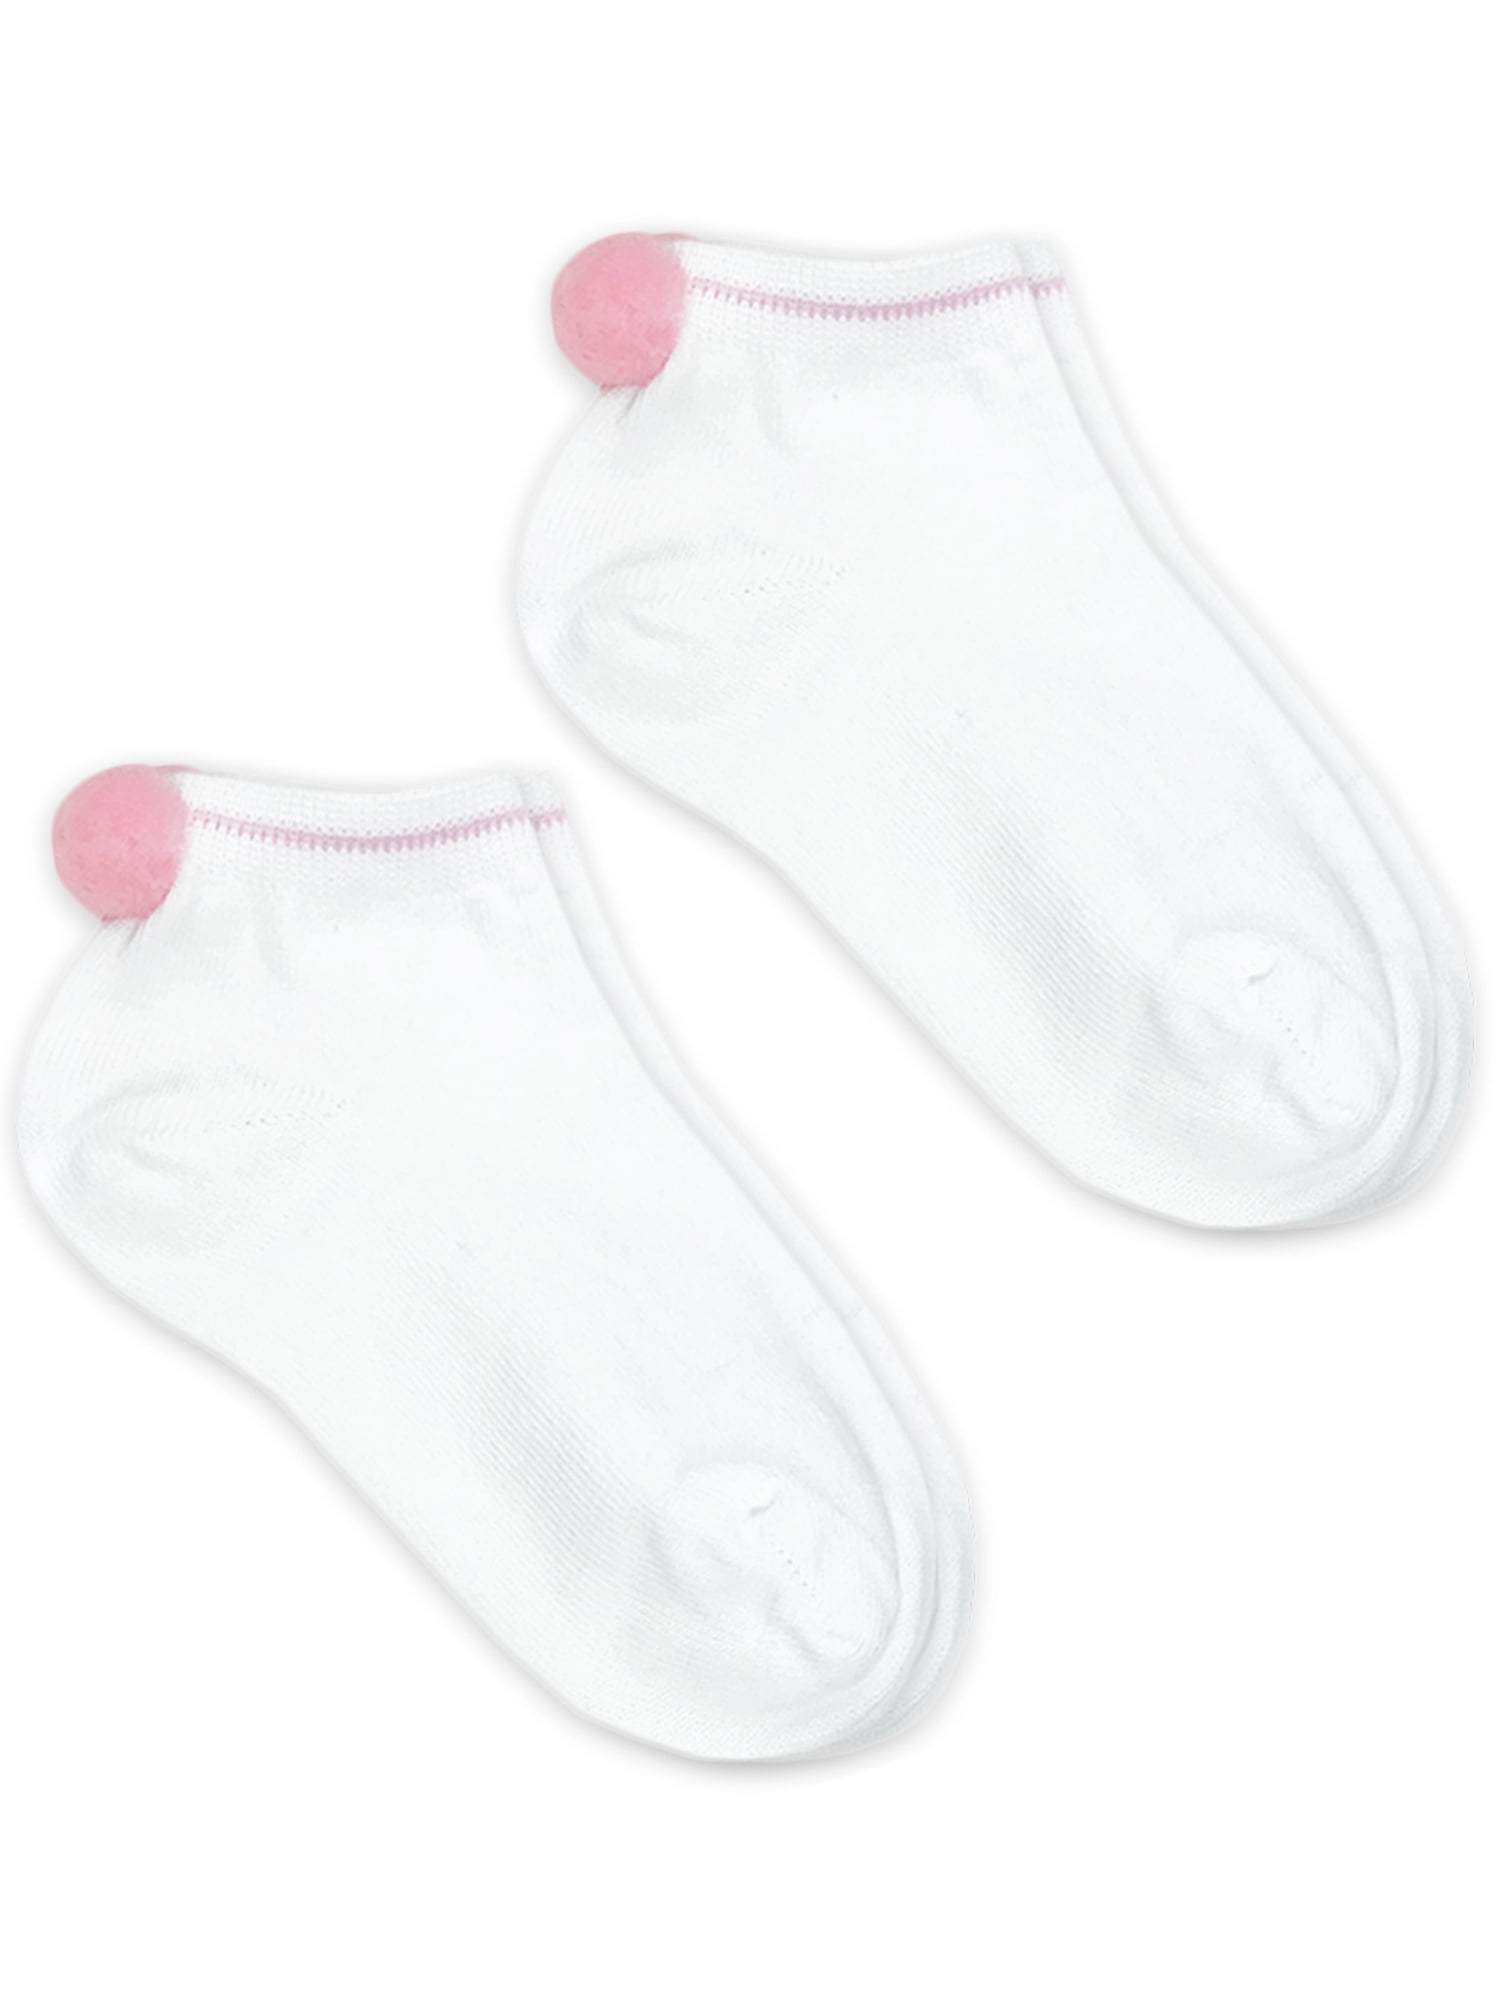 Jefferies Socks Girls Low Cut Pom Pom Socks 2-Pack, Sizes XS-M ...